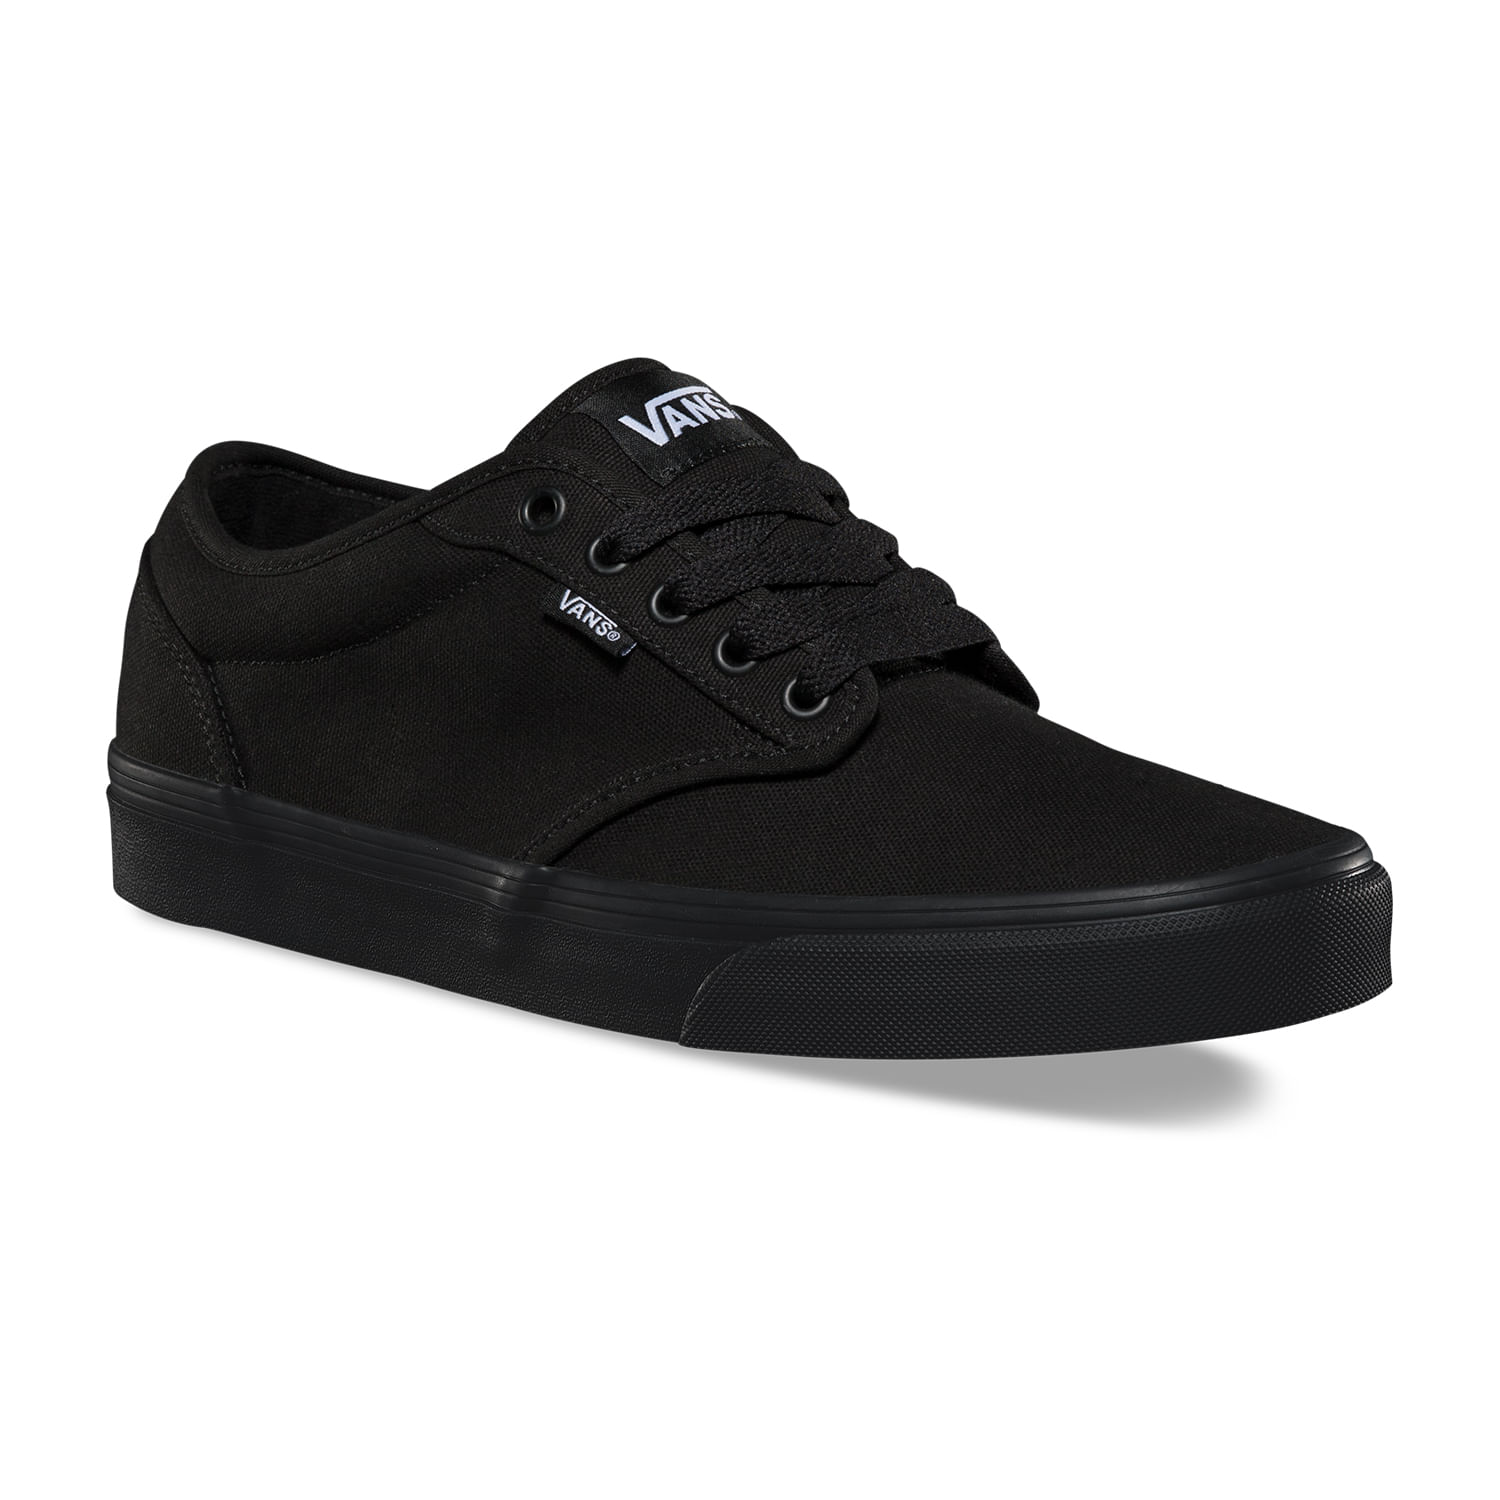 Atwood Black/Black - Zapatos.cl | Sitio Oficial - Encuentra Vestuario, Calzado y más